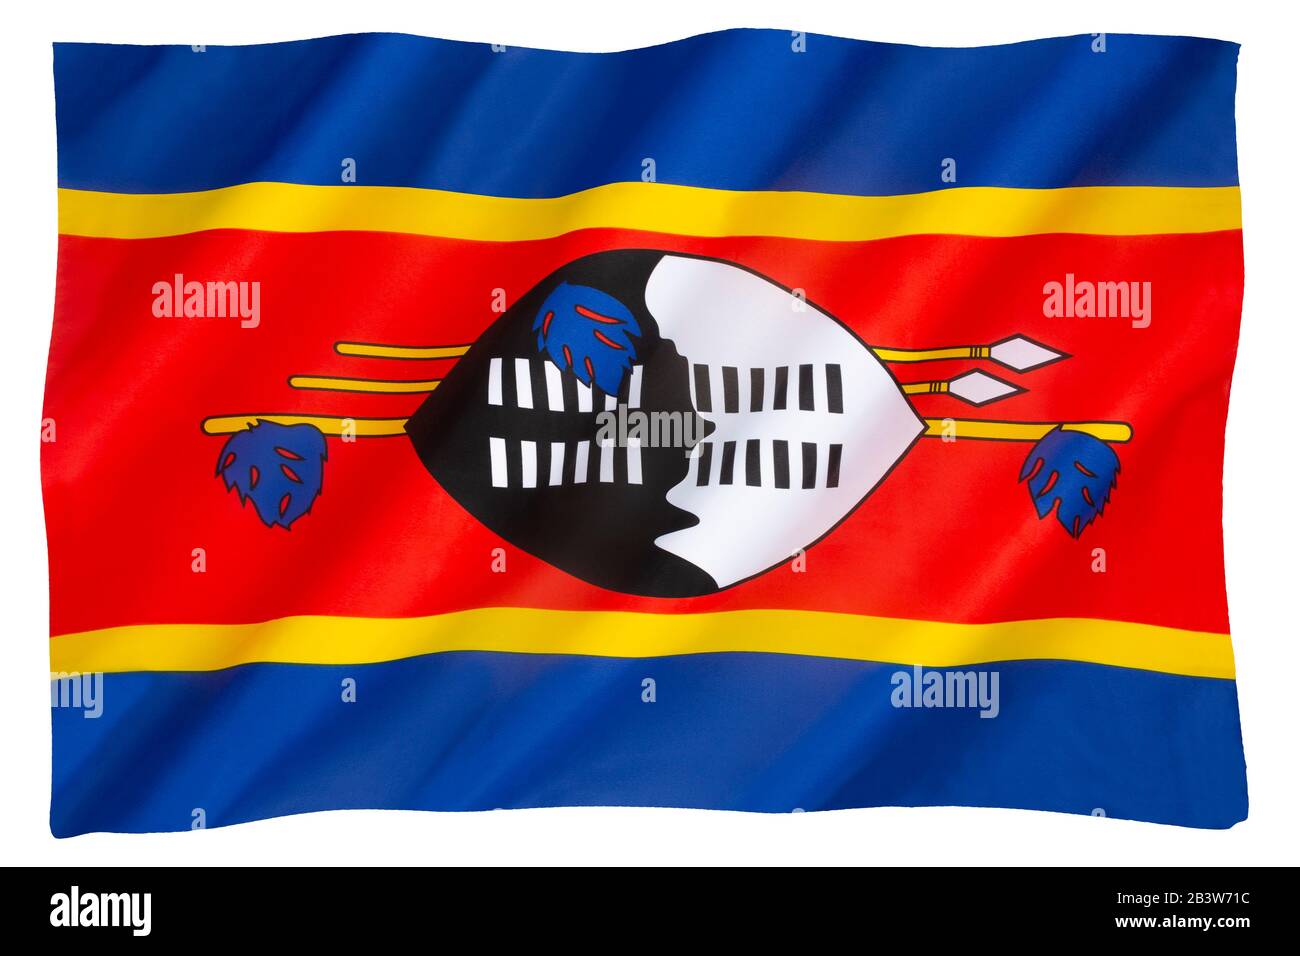 Le drapeau d'Eswatini a été adopté le 6 octobre 1968 après que Eswatini (alors le Swaziland) ait obtenu l'indépendance de la Grande-Bretagne le 6 septembre 1968. Banque D'Images